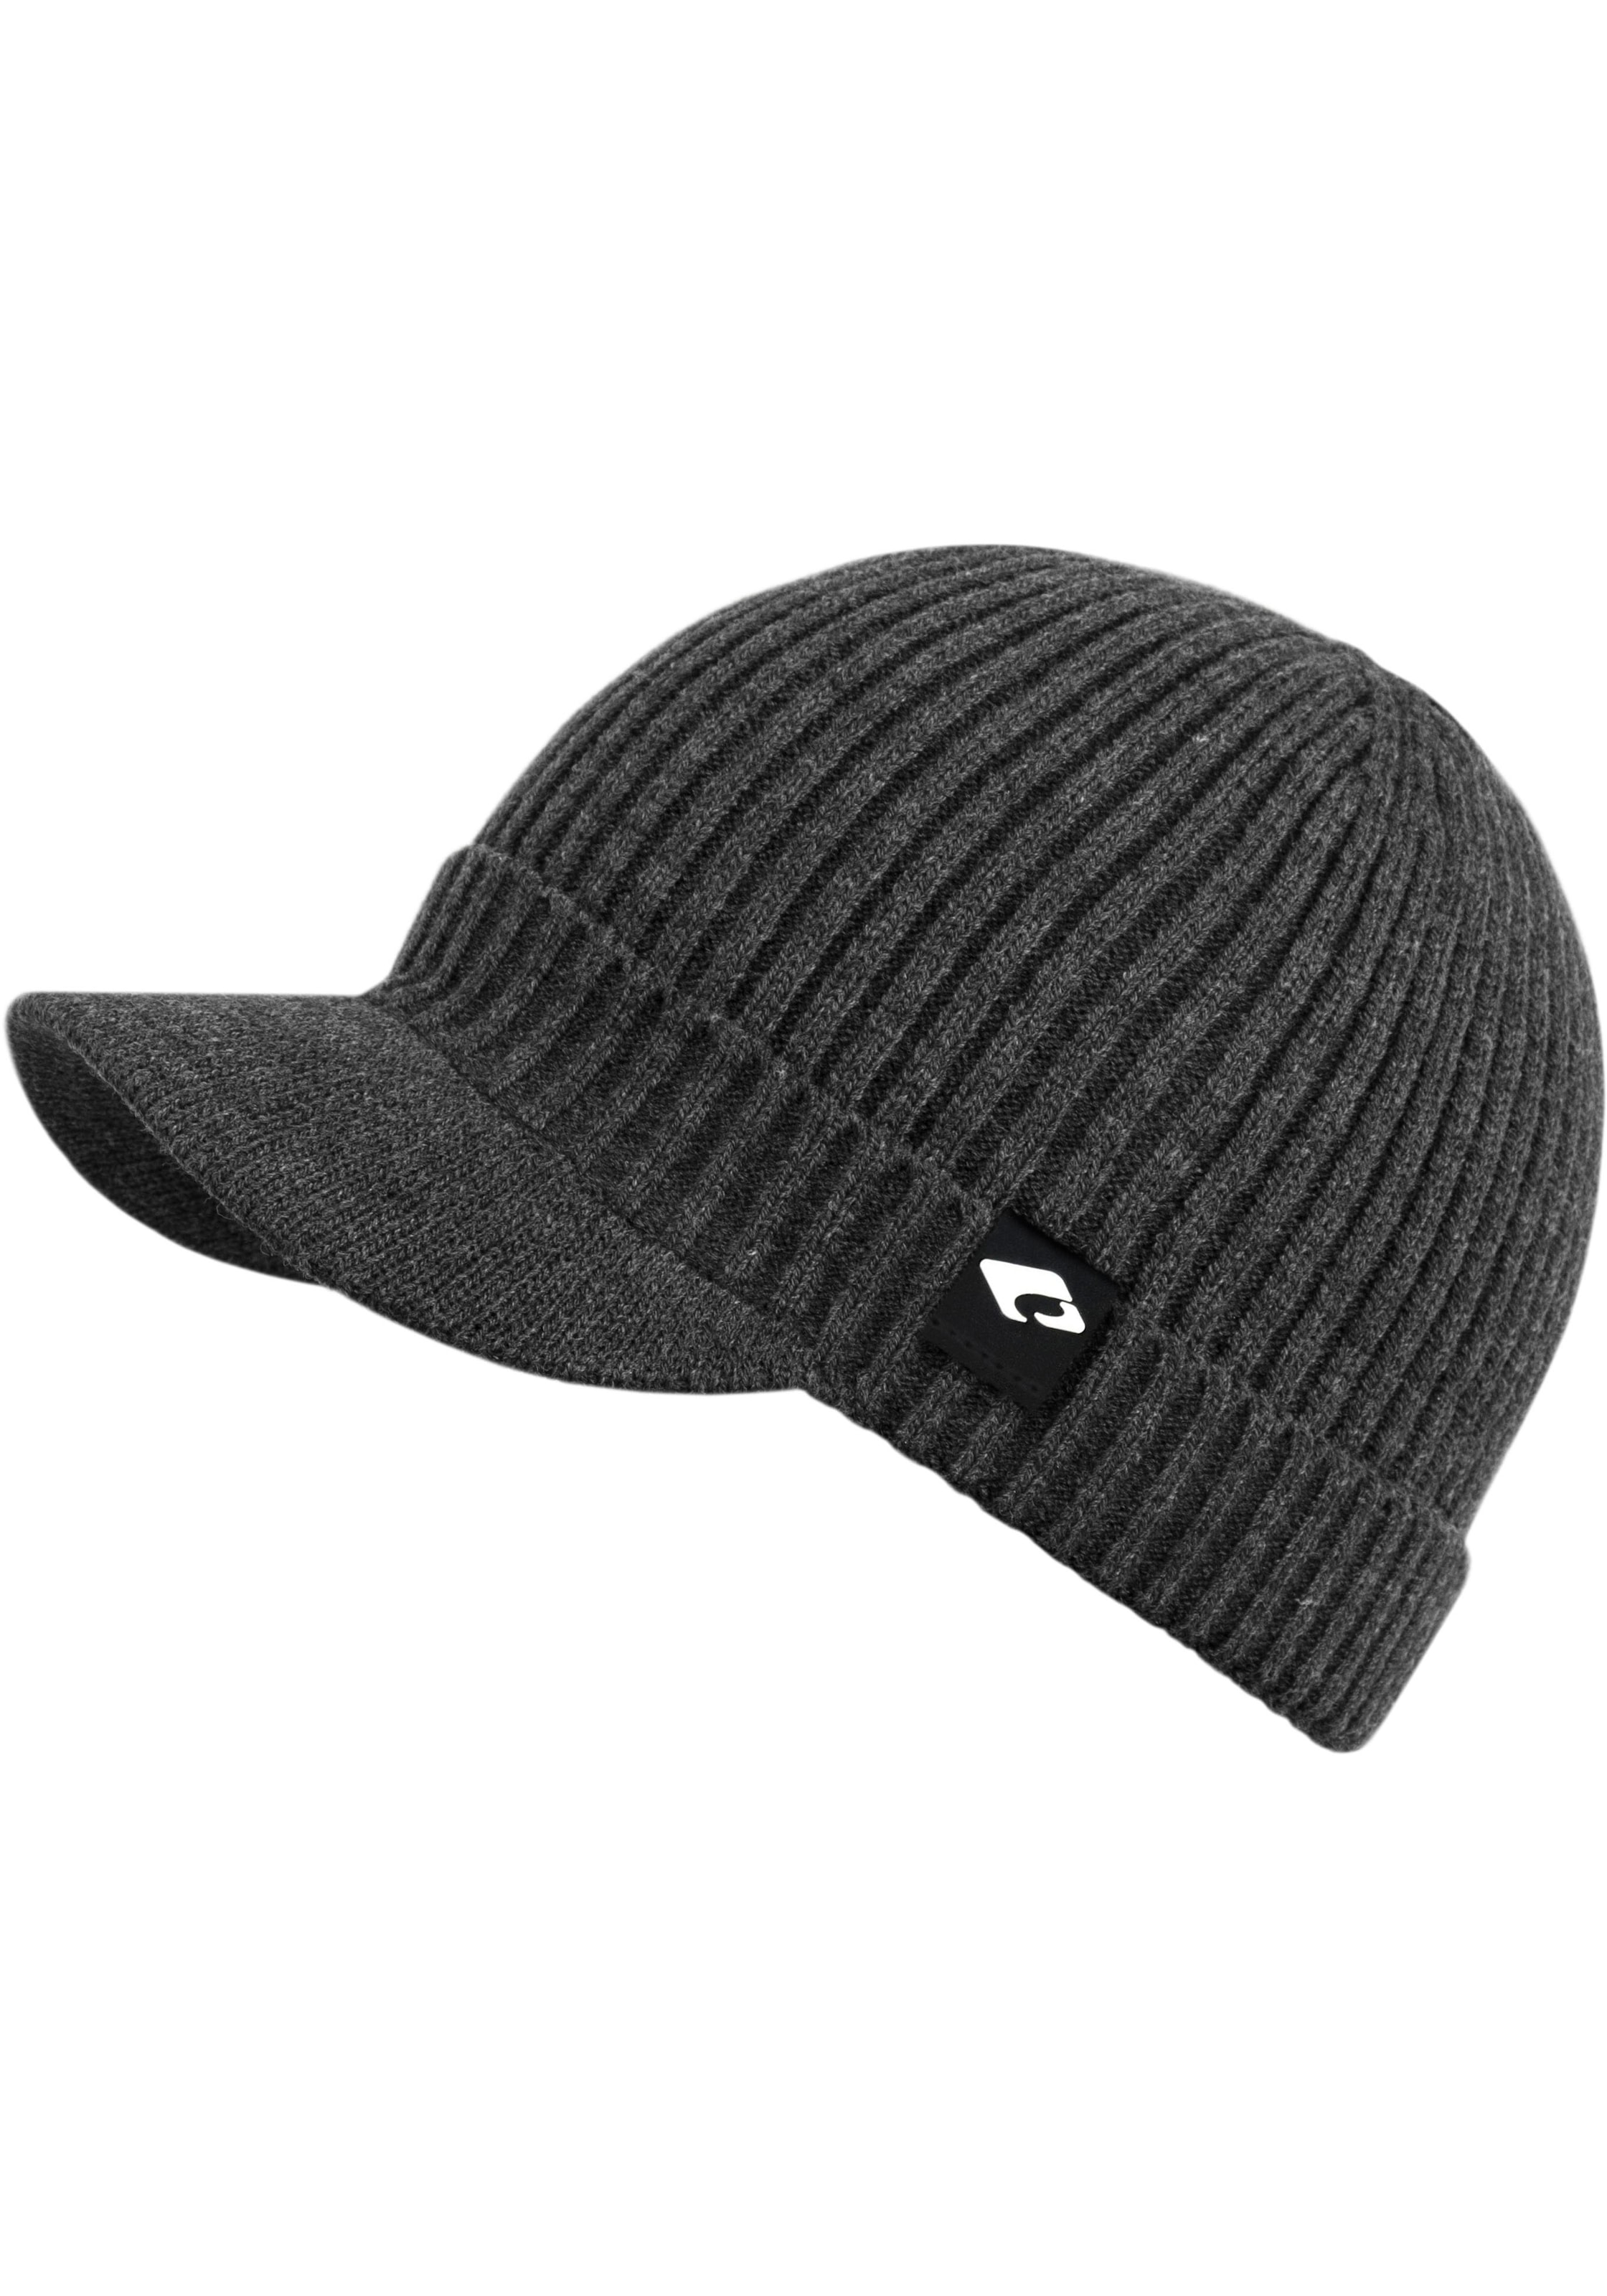 Strickmütze »Benno OTTO Hat«, Benno shoppen chillouts online Hat bei